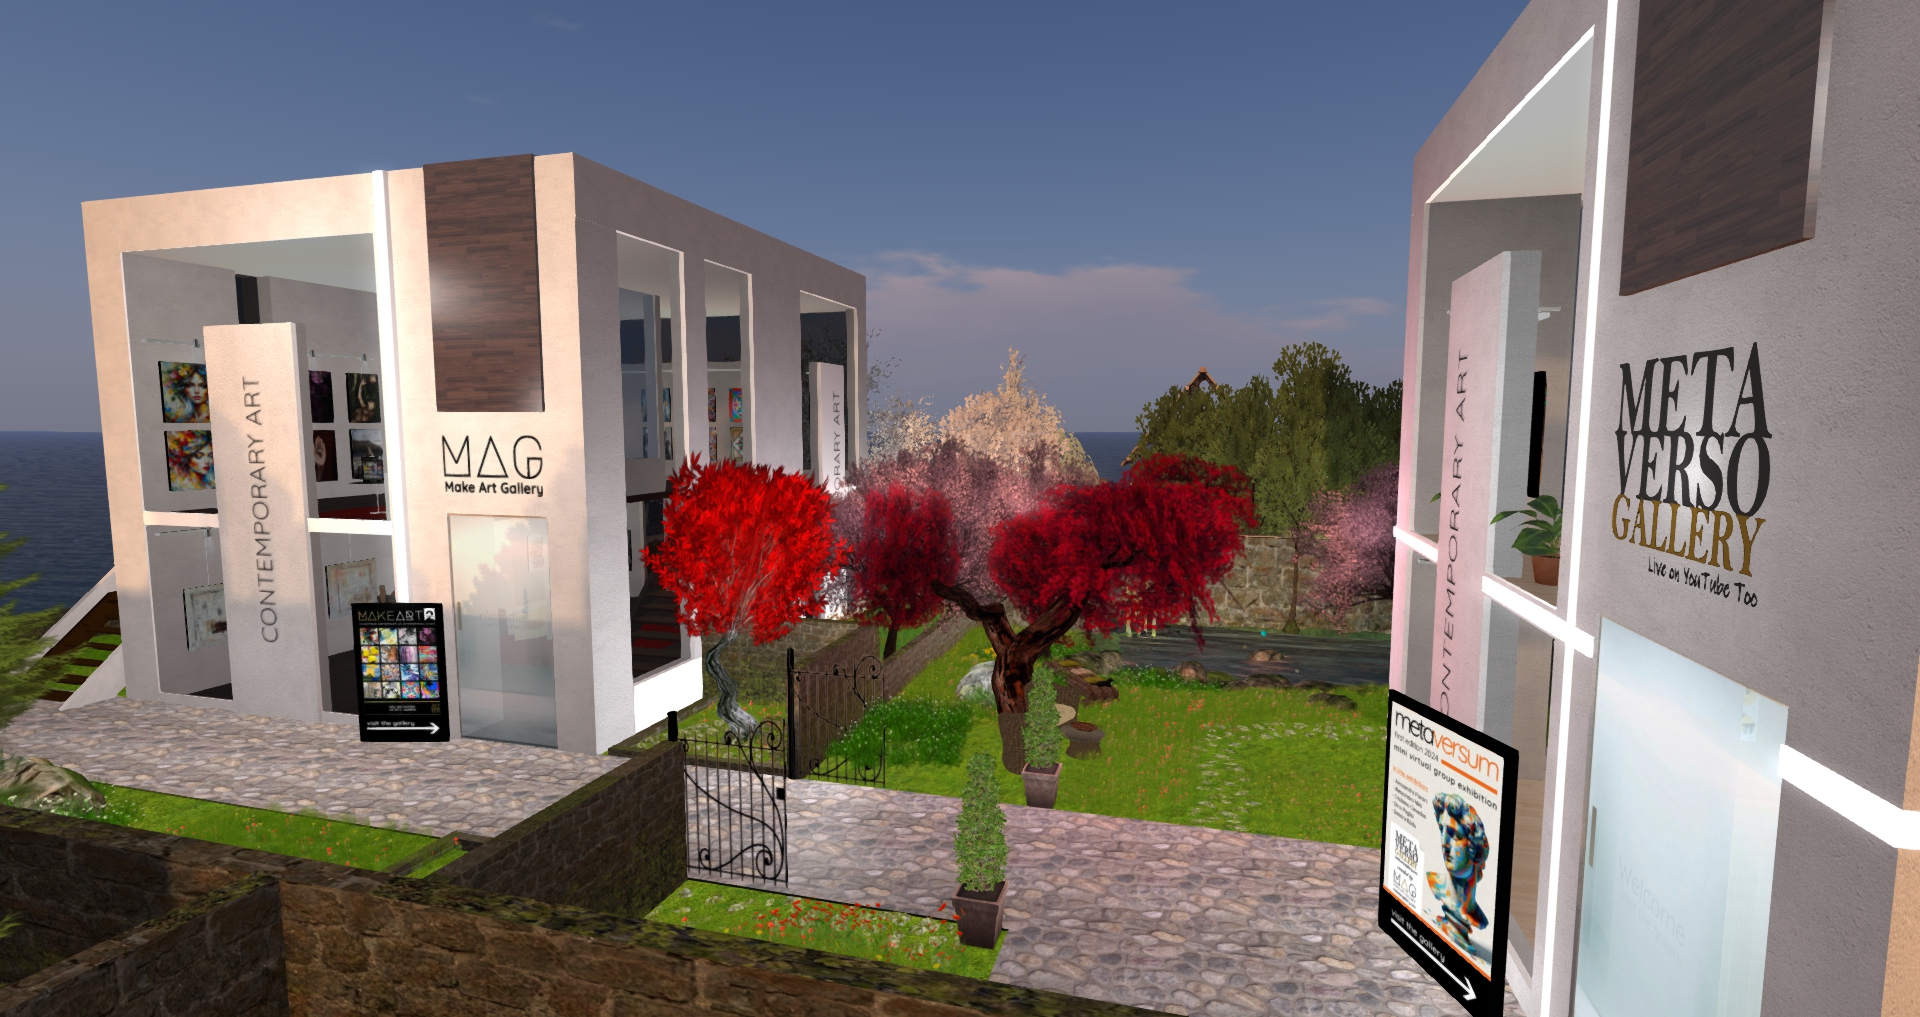 immagine della galleria MAG nel metaverso di Second Life per mostre collettive e presentazioni libri